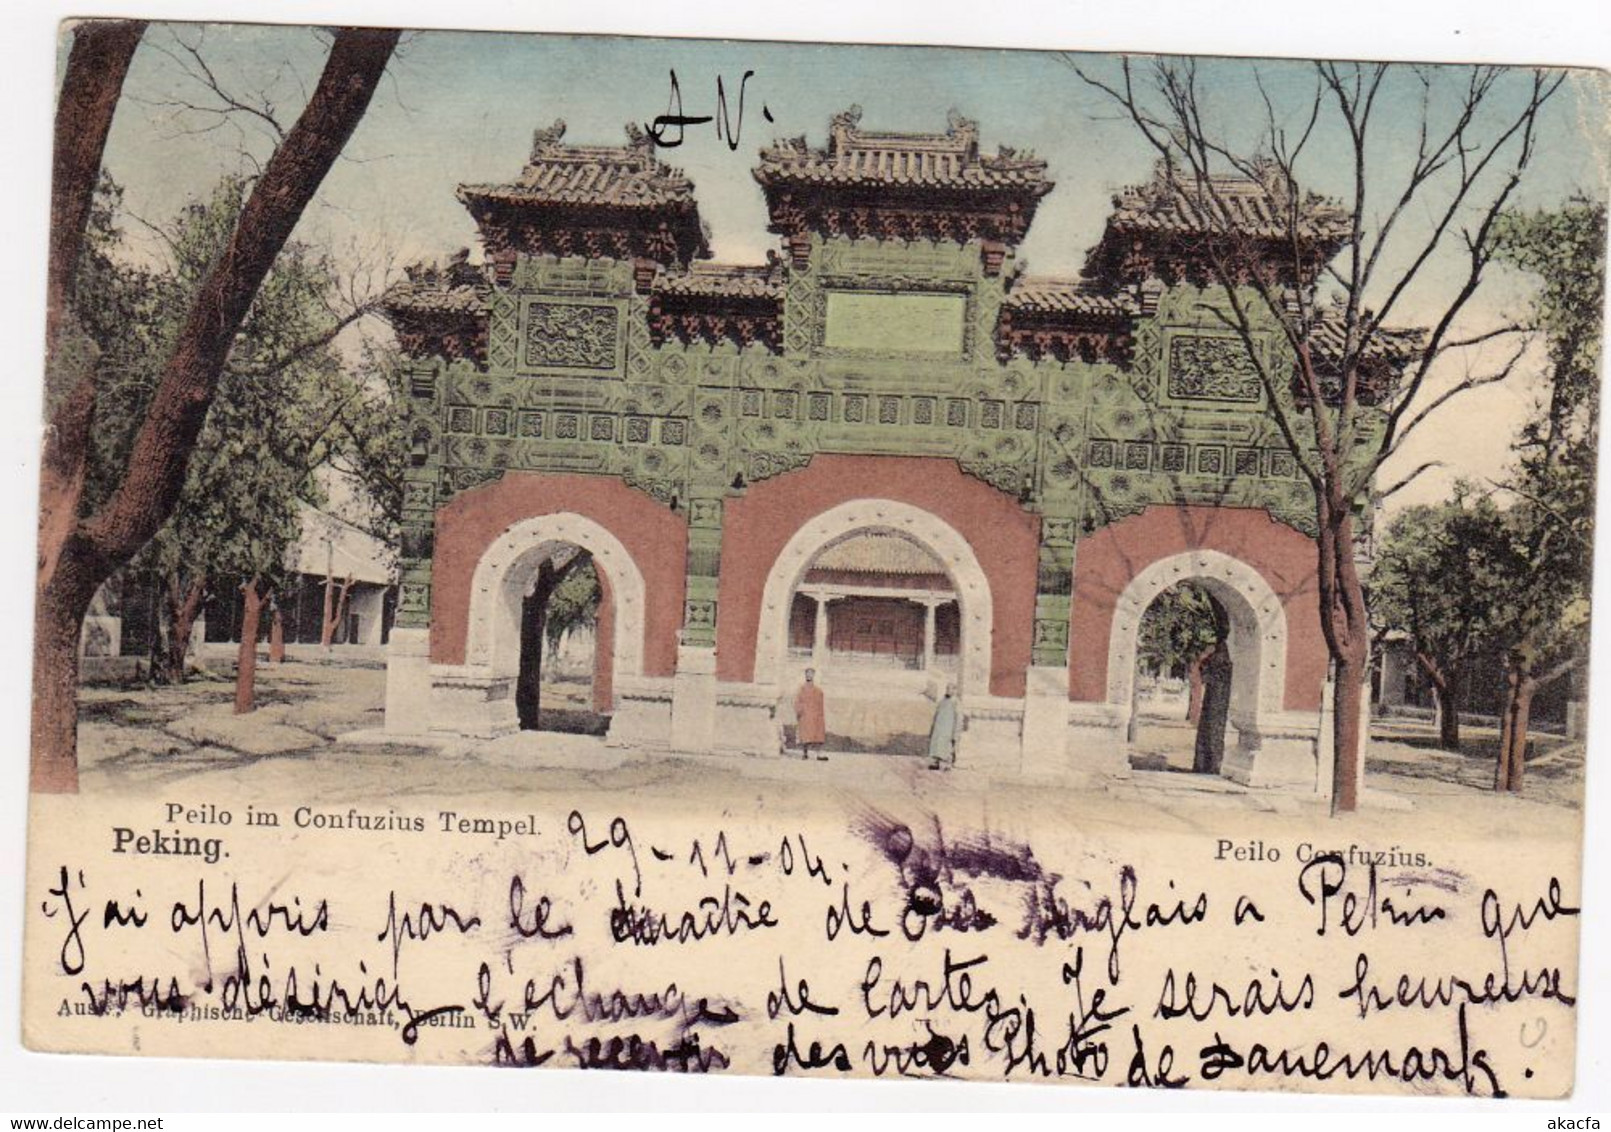 CHINA 1904 Postcard Cover Dragon 1c Pair To Denmark Postage Due, RARE! (c006) - Briefe U. Dokumente